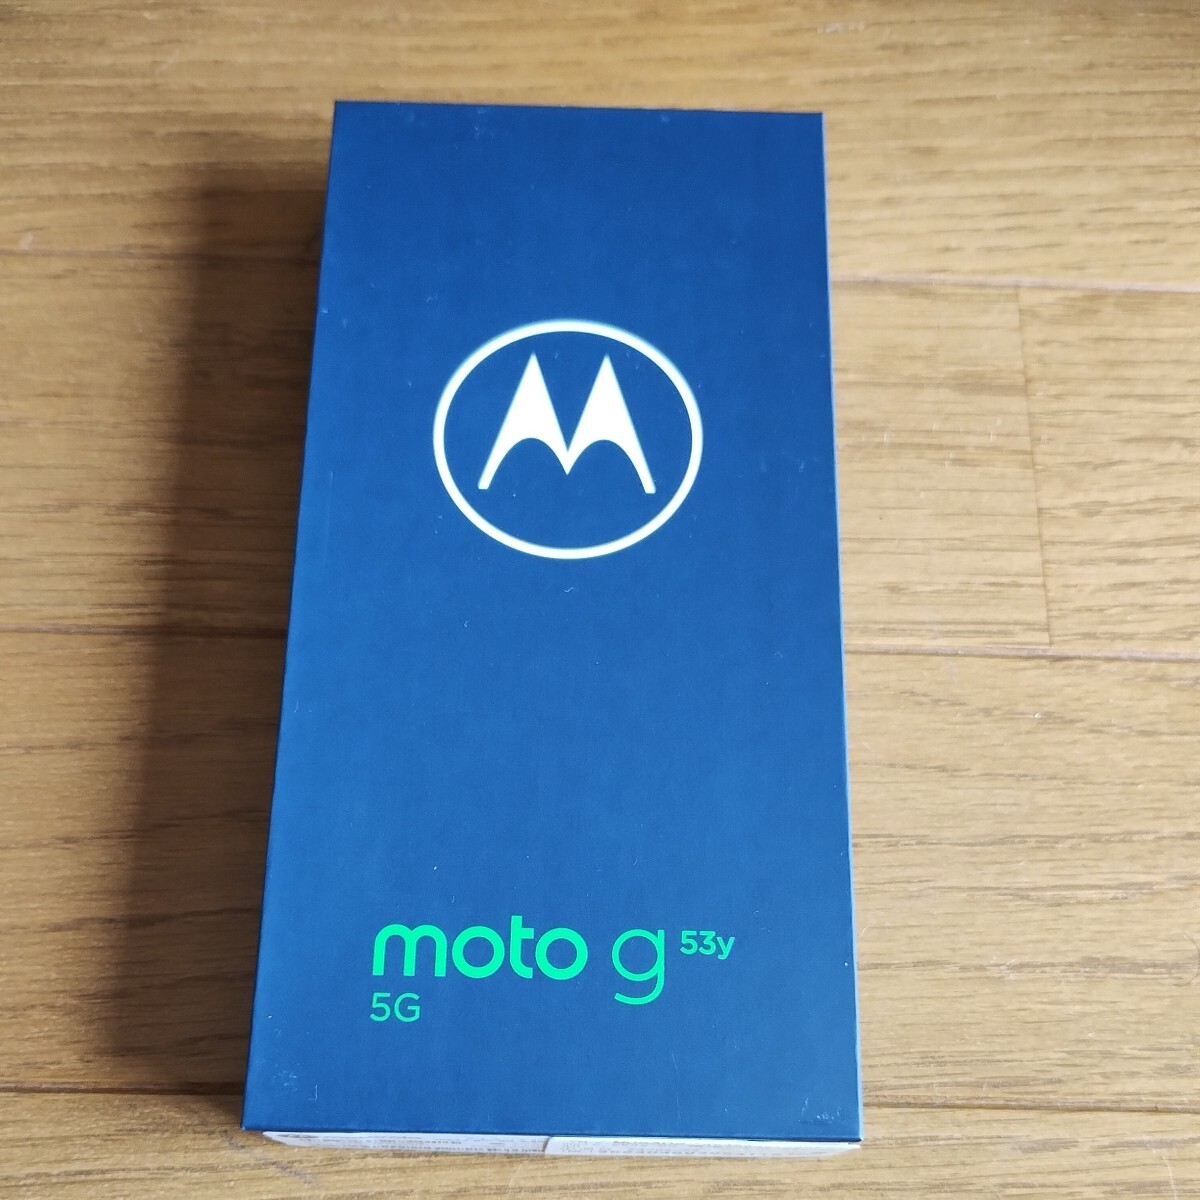 moto g53y Motorola アークティックシルバー スマートホン本体 新品未使用の画像3